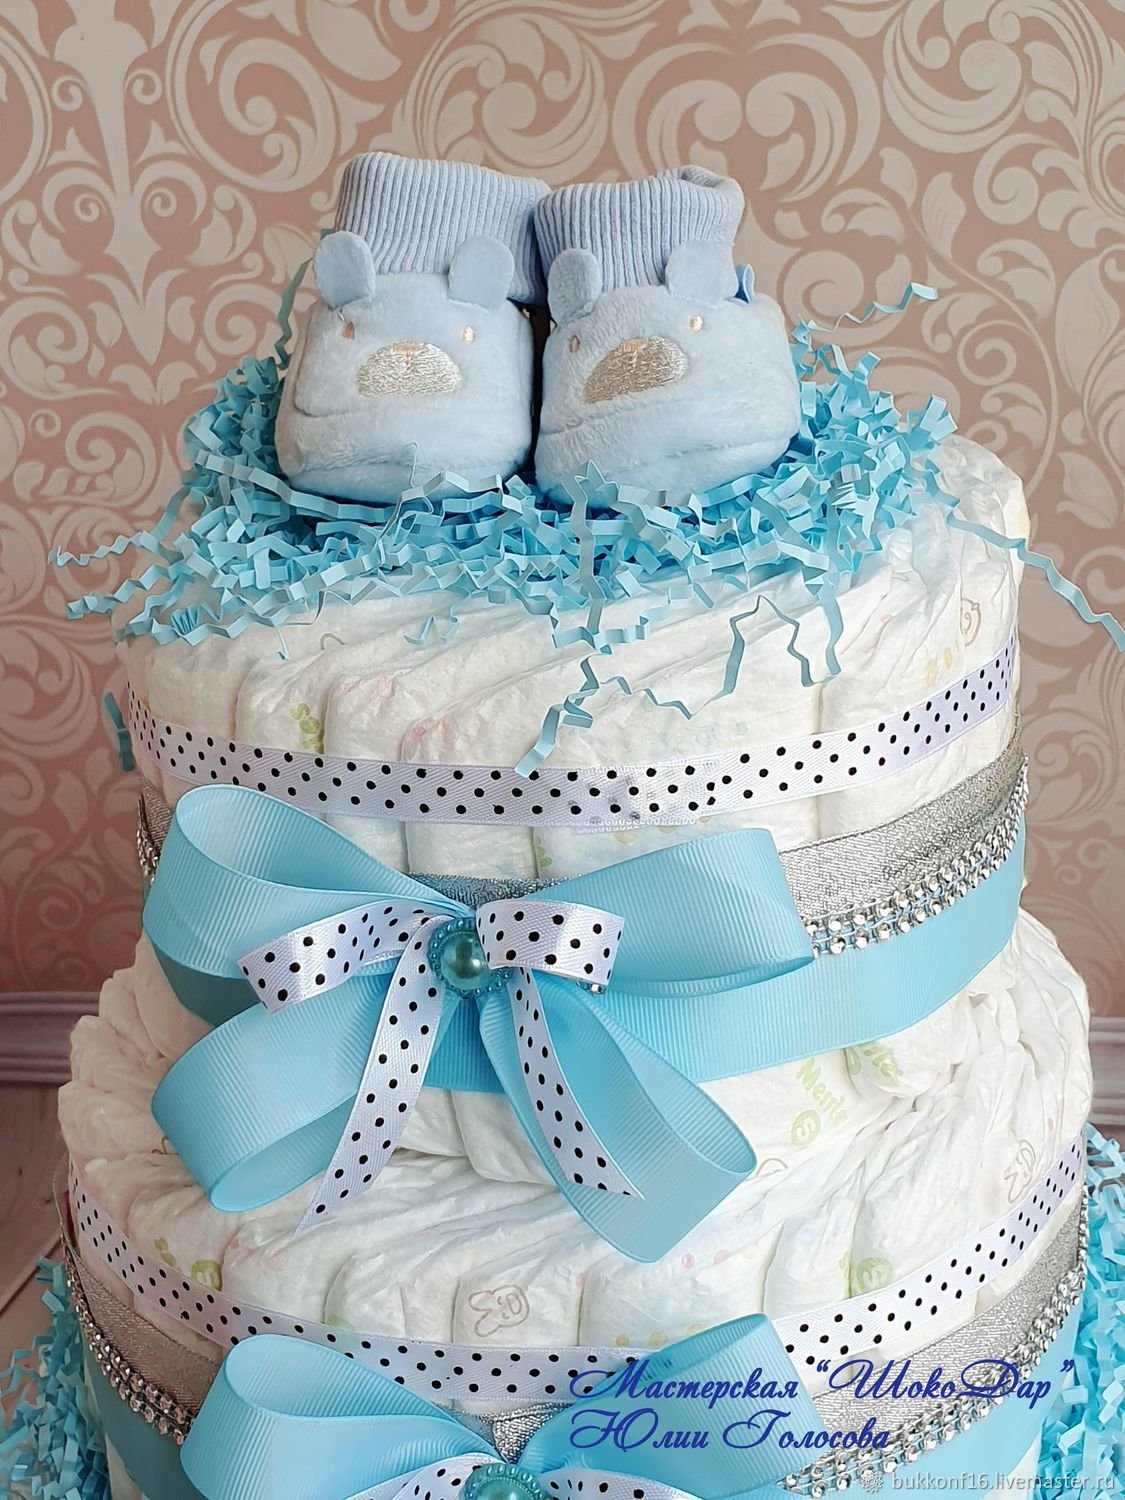 Торт из памперсов - превосходный подарок на рождение ребенка